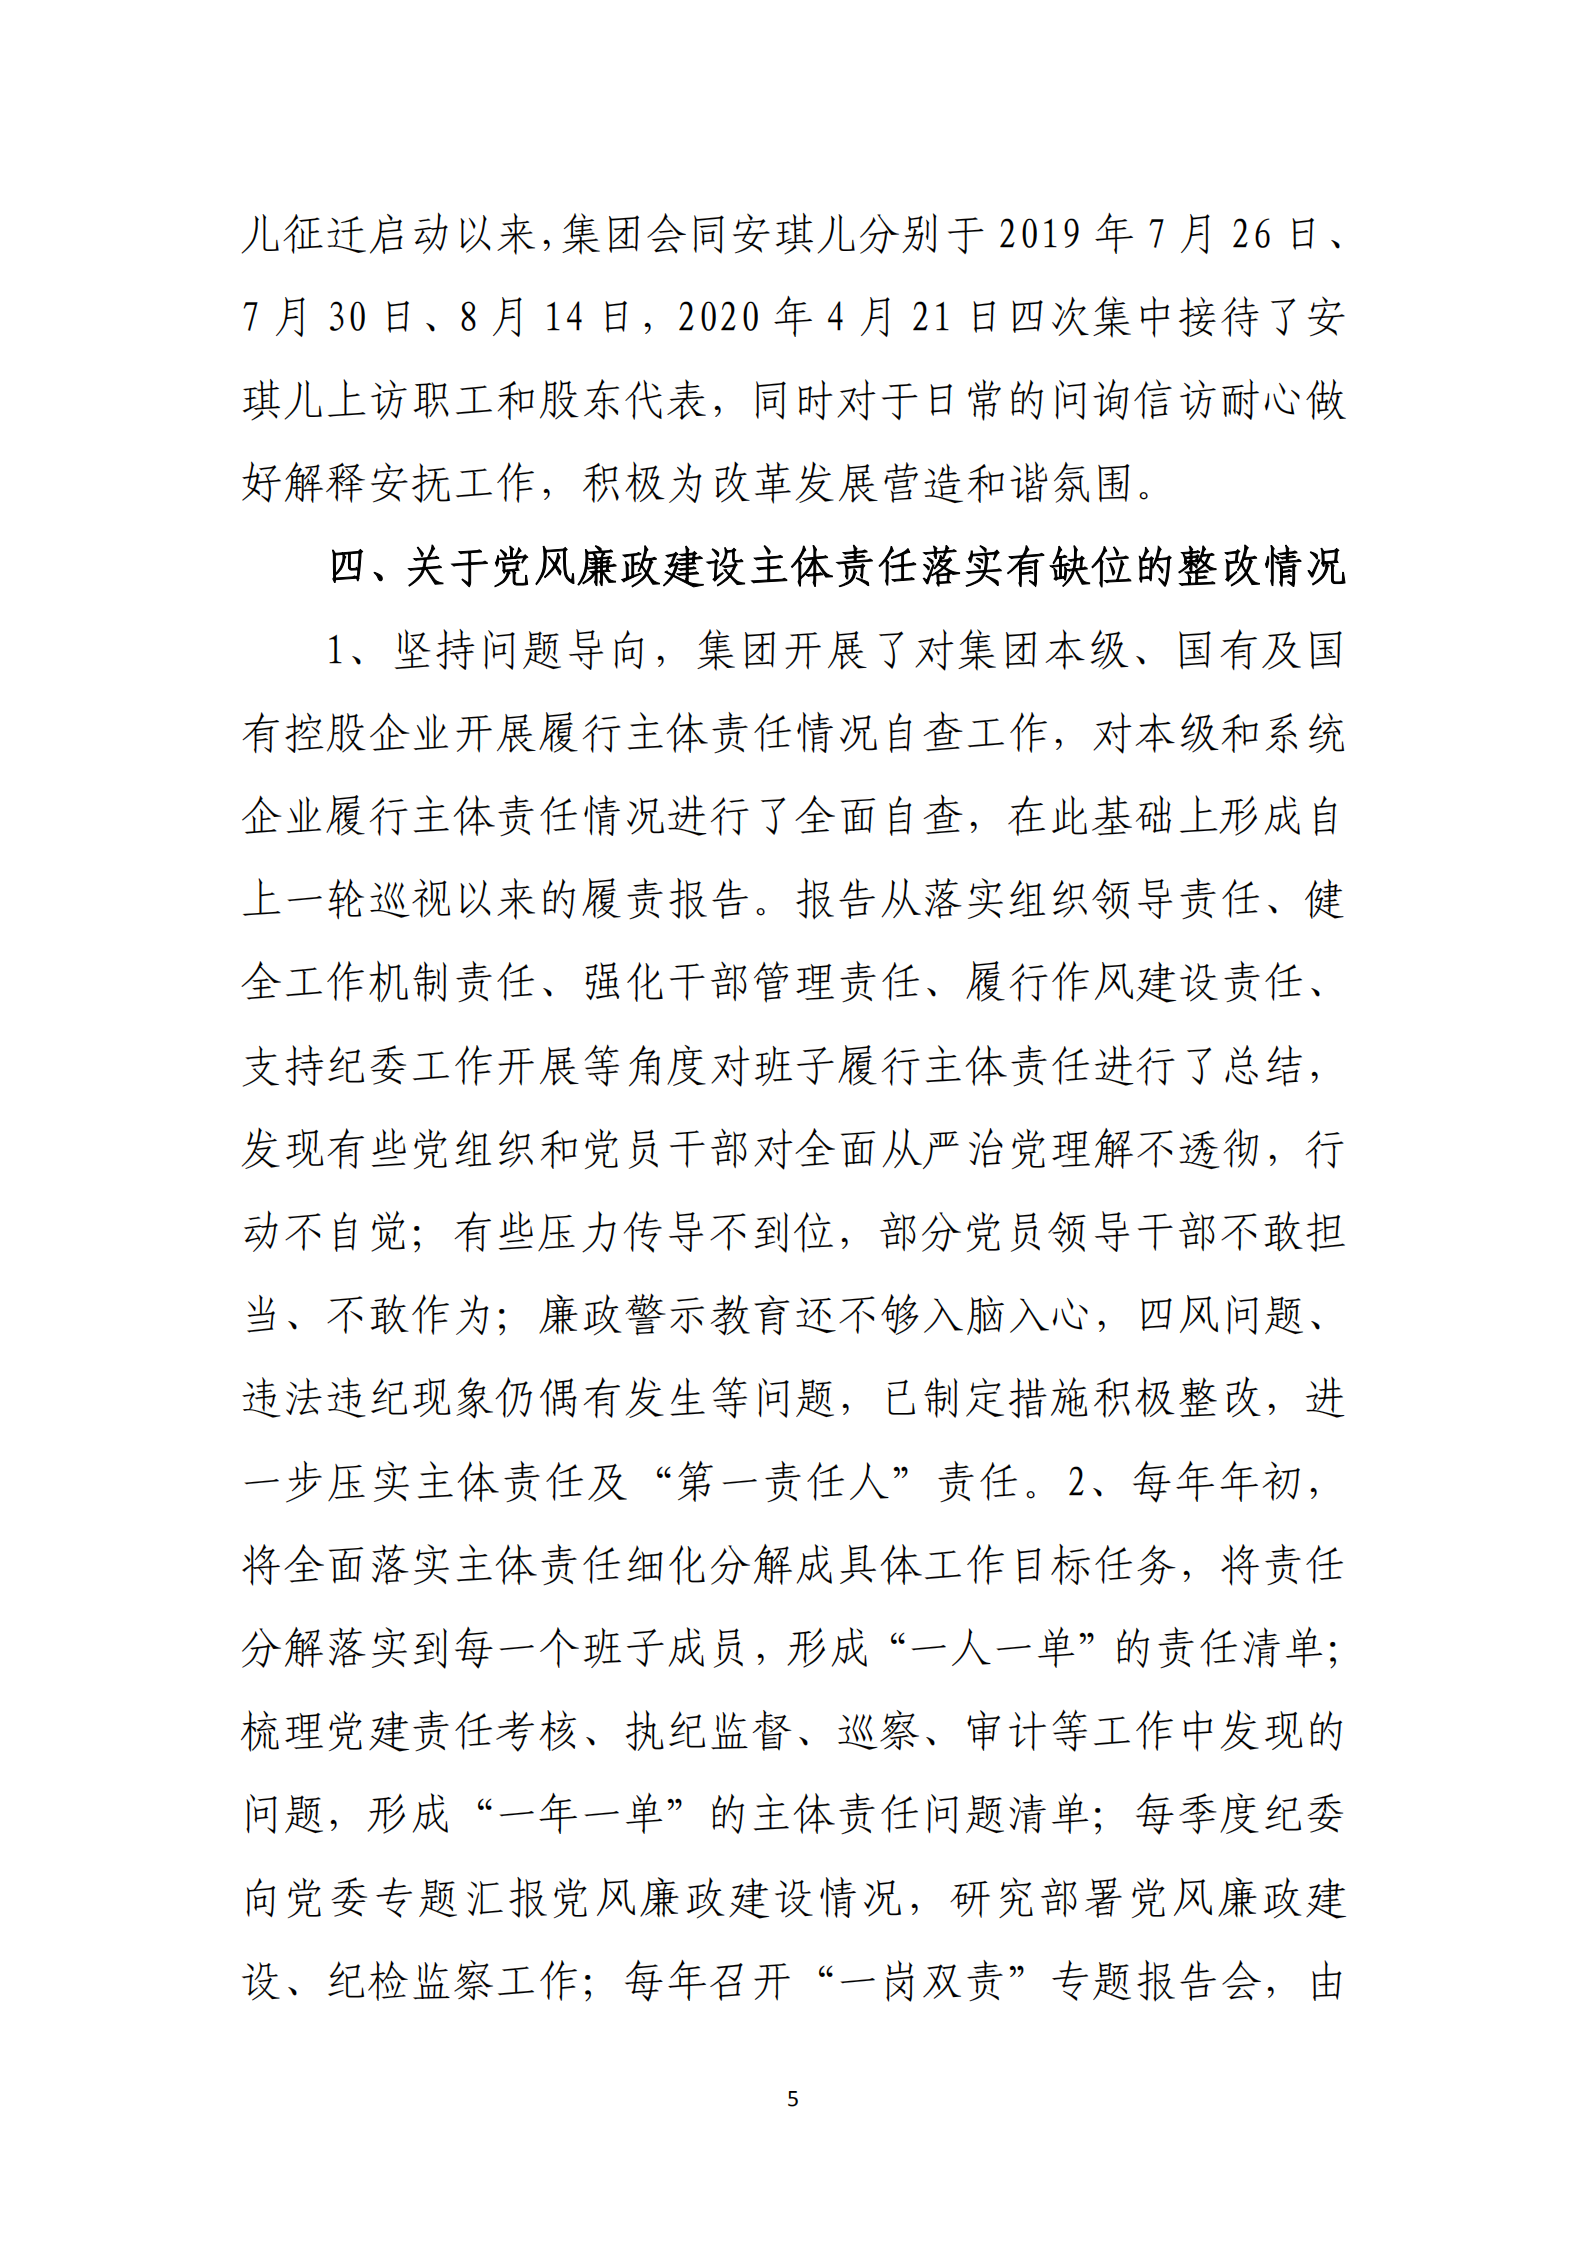 乐虎国际游戏官网党委关于巡察整改情况的通报_04.png